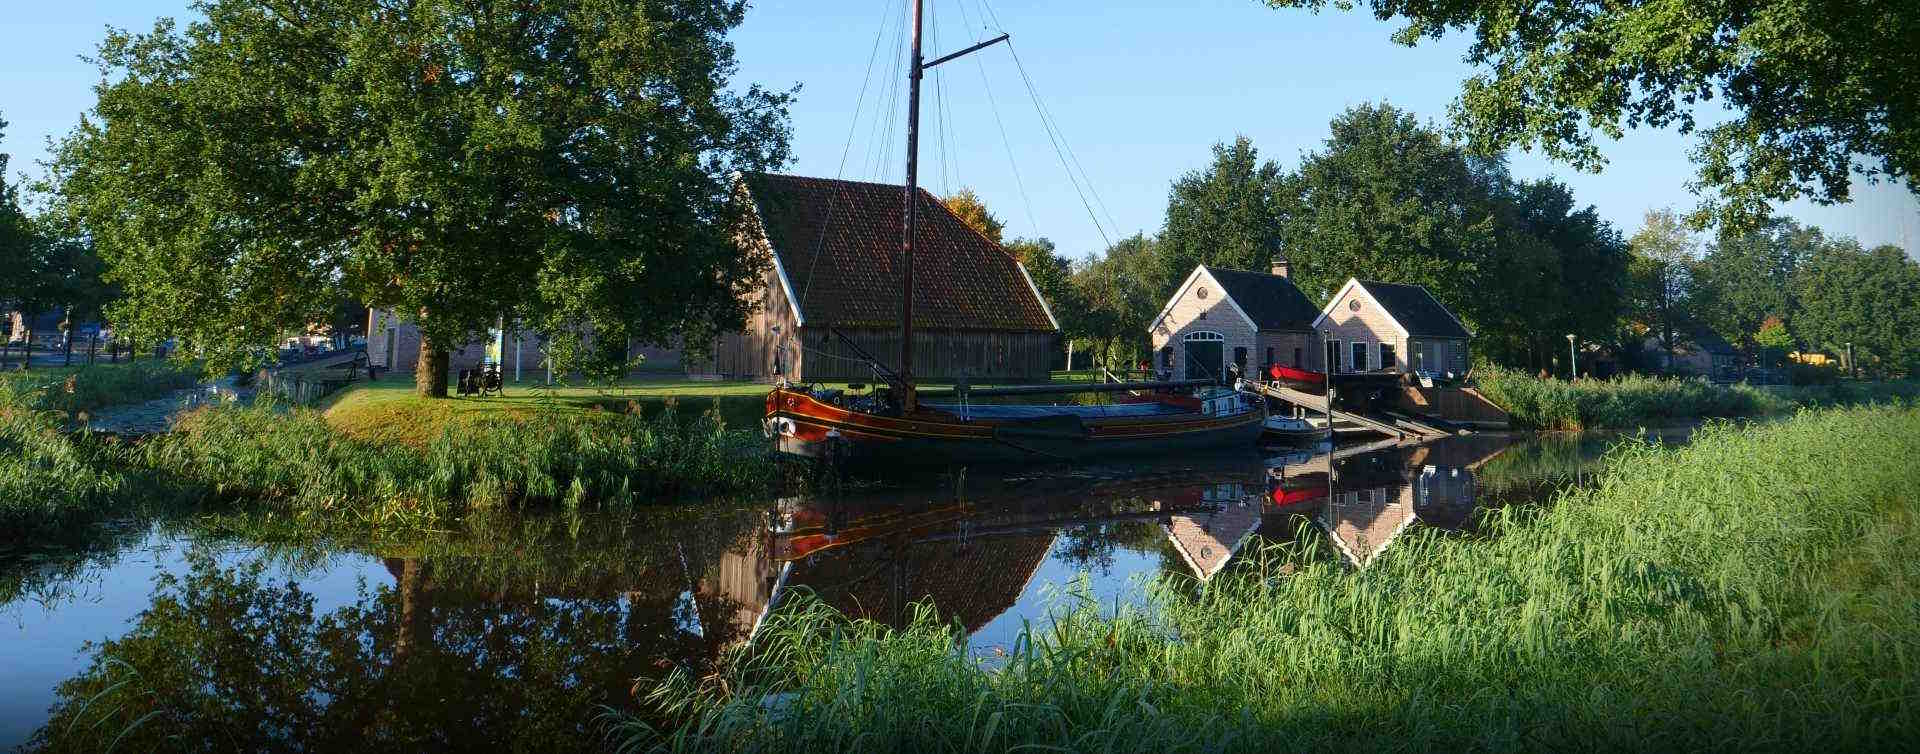 Zeilboot op kanaal in Dedemsvaar, RegioBank in Dedemsvaart